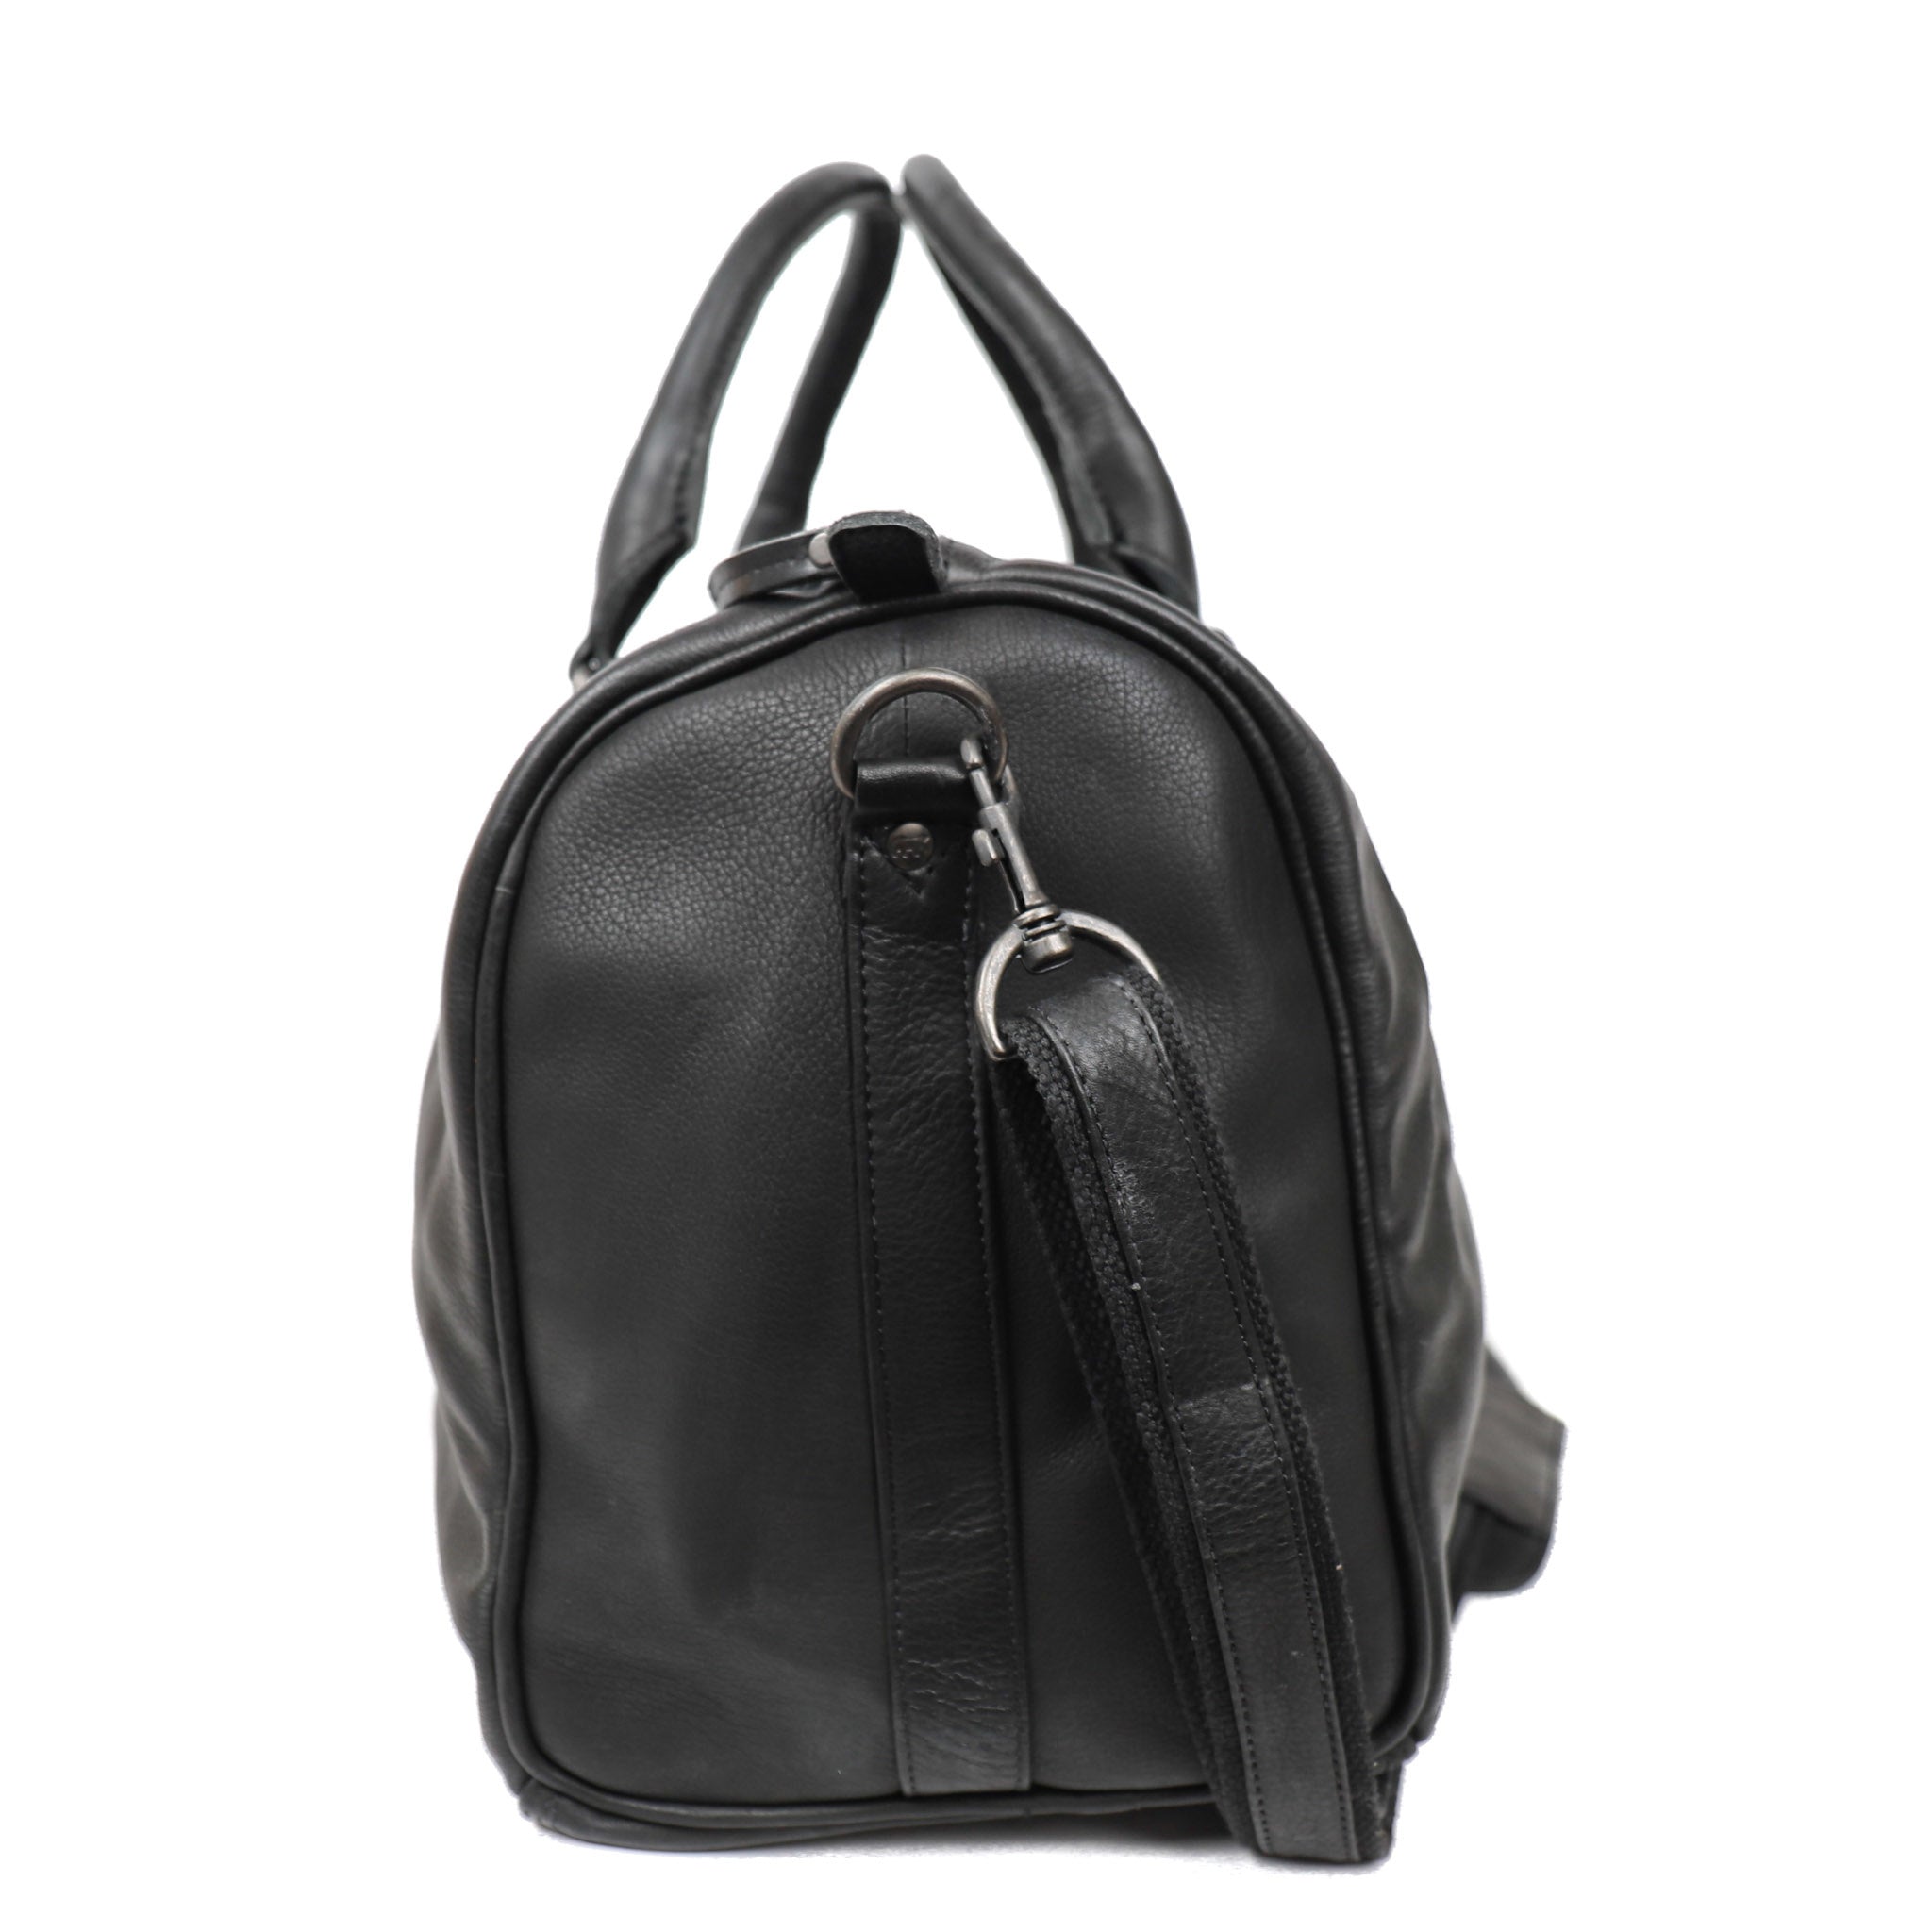 Weekend bag 'Daniel' M black - CP 2293